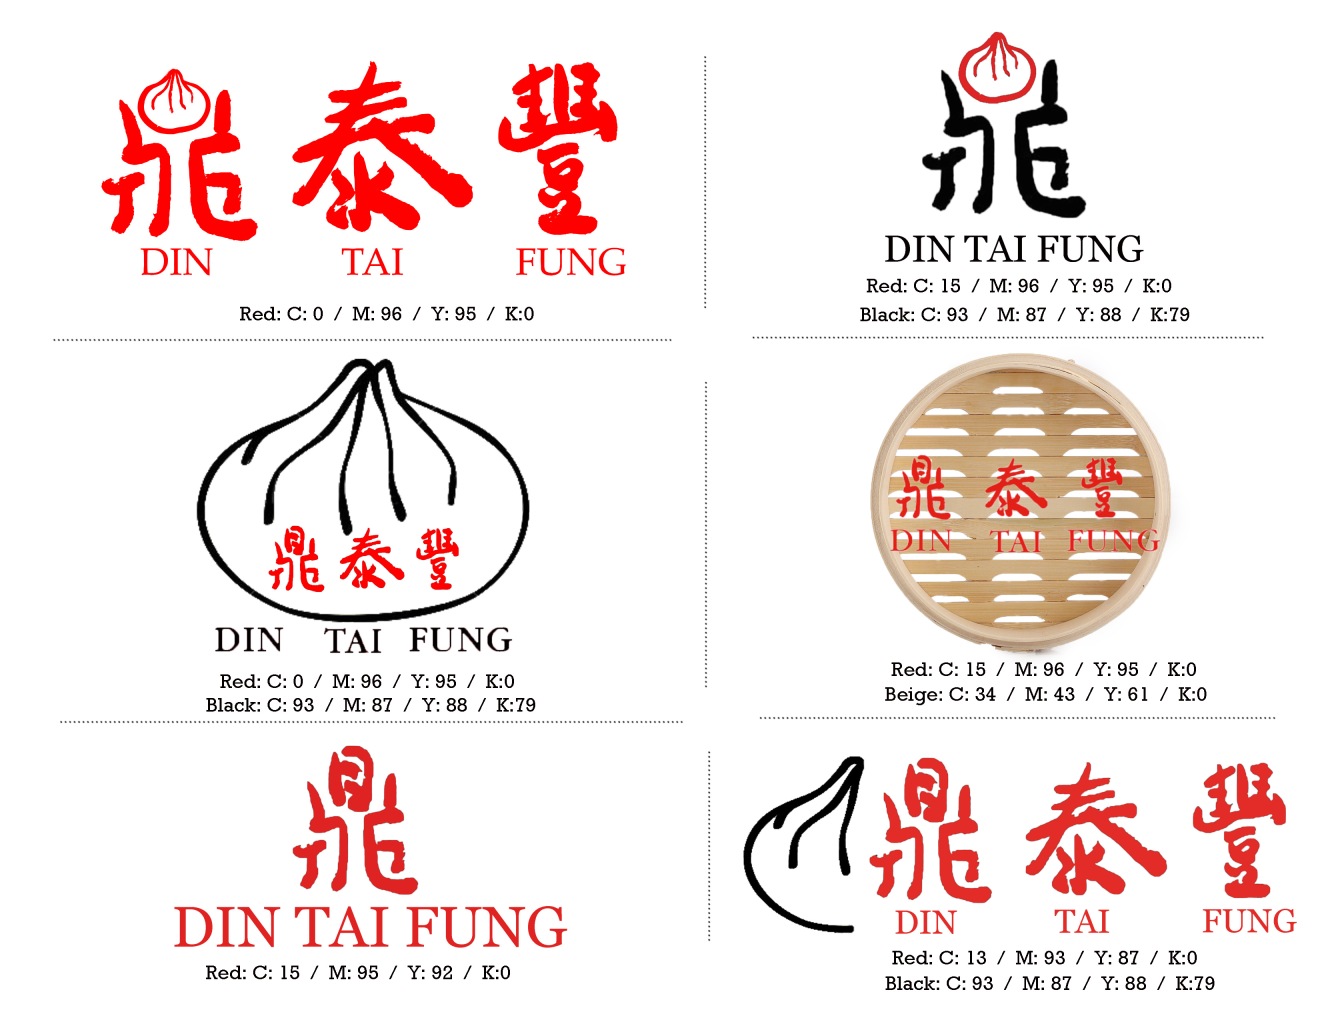 Tai fung. Din лого. Din logo. Mau Fung logo.